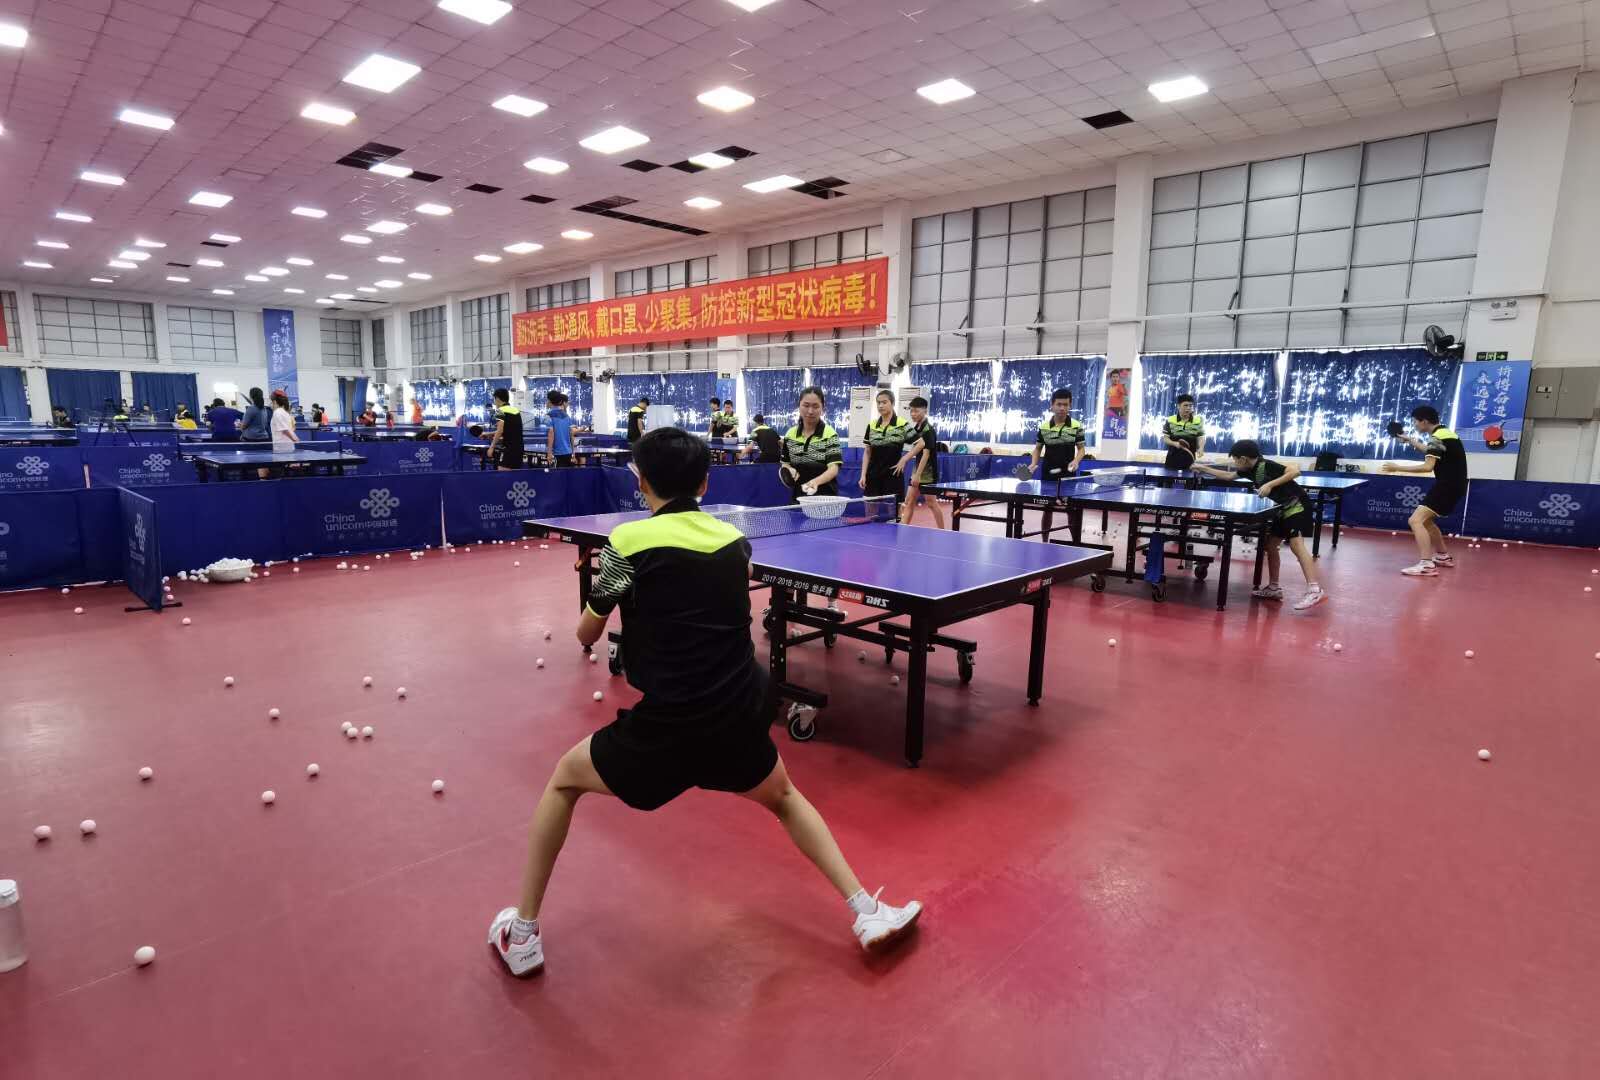 重庆市气象局乒乓球协会组织开展2019年冬季乒乓球比赛和斯诺克台球比赛